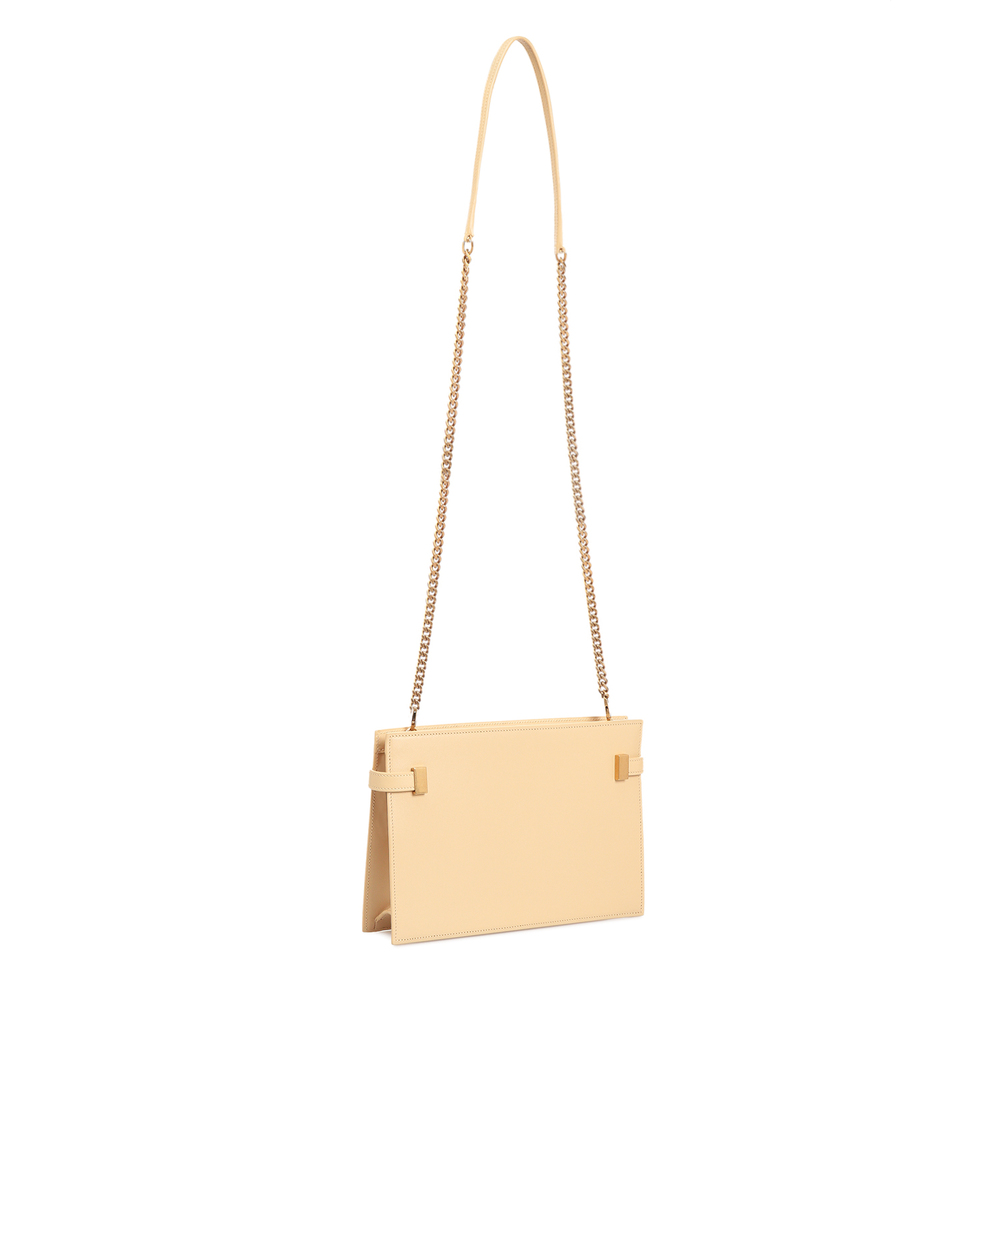 Кожаная сумка New Manhattan Saint Laurent 636478-0SX0W, бежевый цвет • Купить в интернет-магазине Kameron